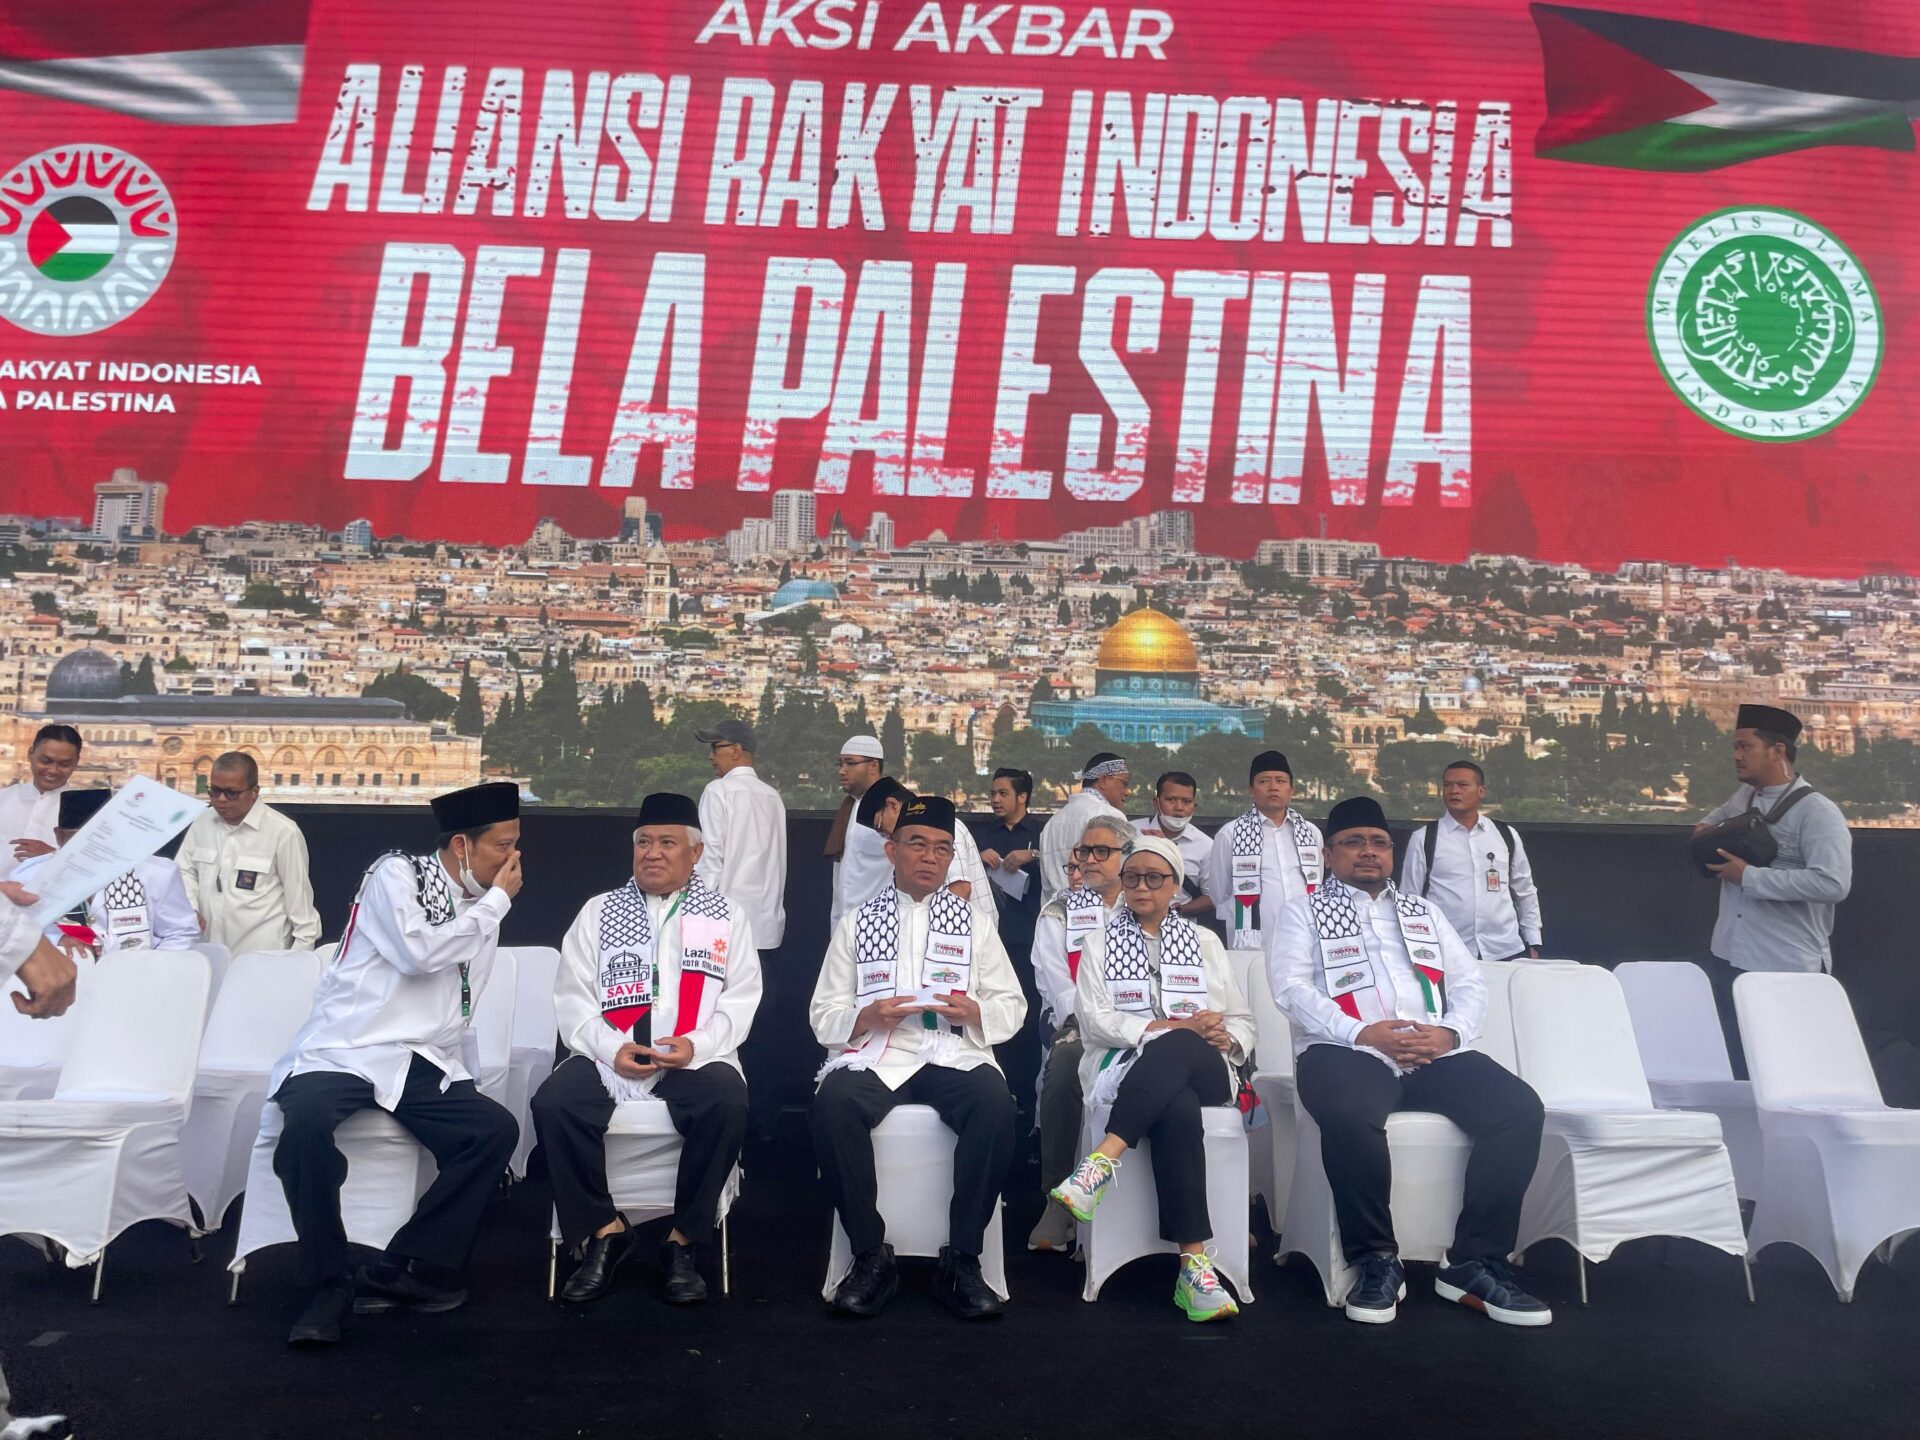 Bacapres dari Partai Gerindra, Prabowo Subianto, absen dalam acara Aksi Akbar Aliansi Rakyat Indonesia Bela Palestina di Monas. Mengenai ketidakhadiran Prabowo (Sumber Foto : Kemenag RI)